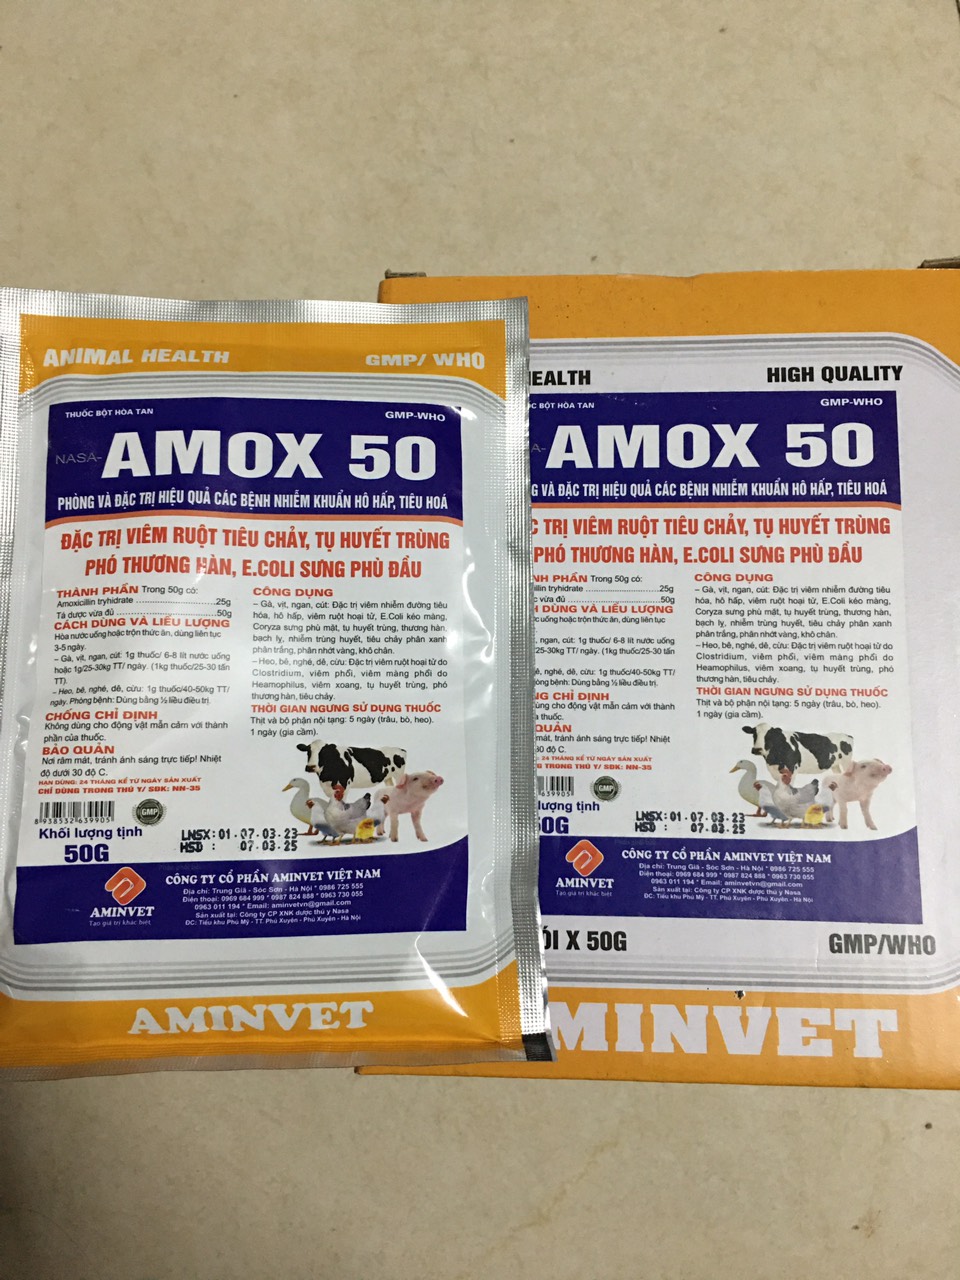 Amox 50% aminvet (50gam) viêm ruột, tiêu chảy, tụ huyết trùng gia súc, gia cầm